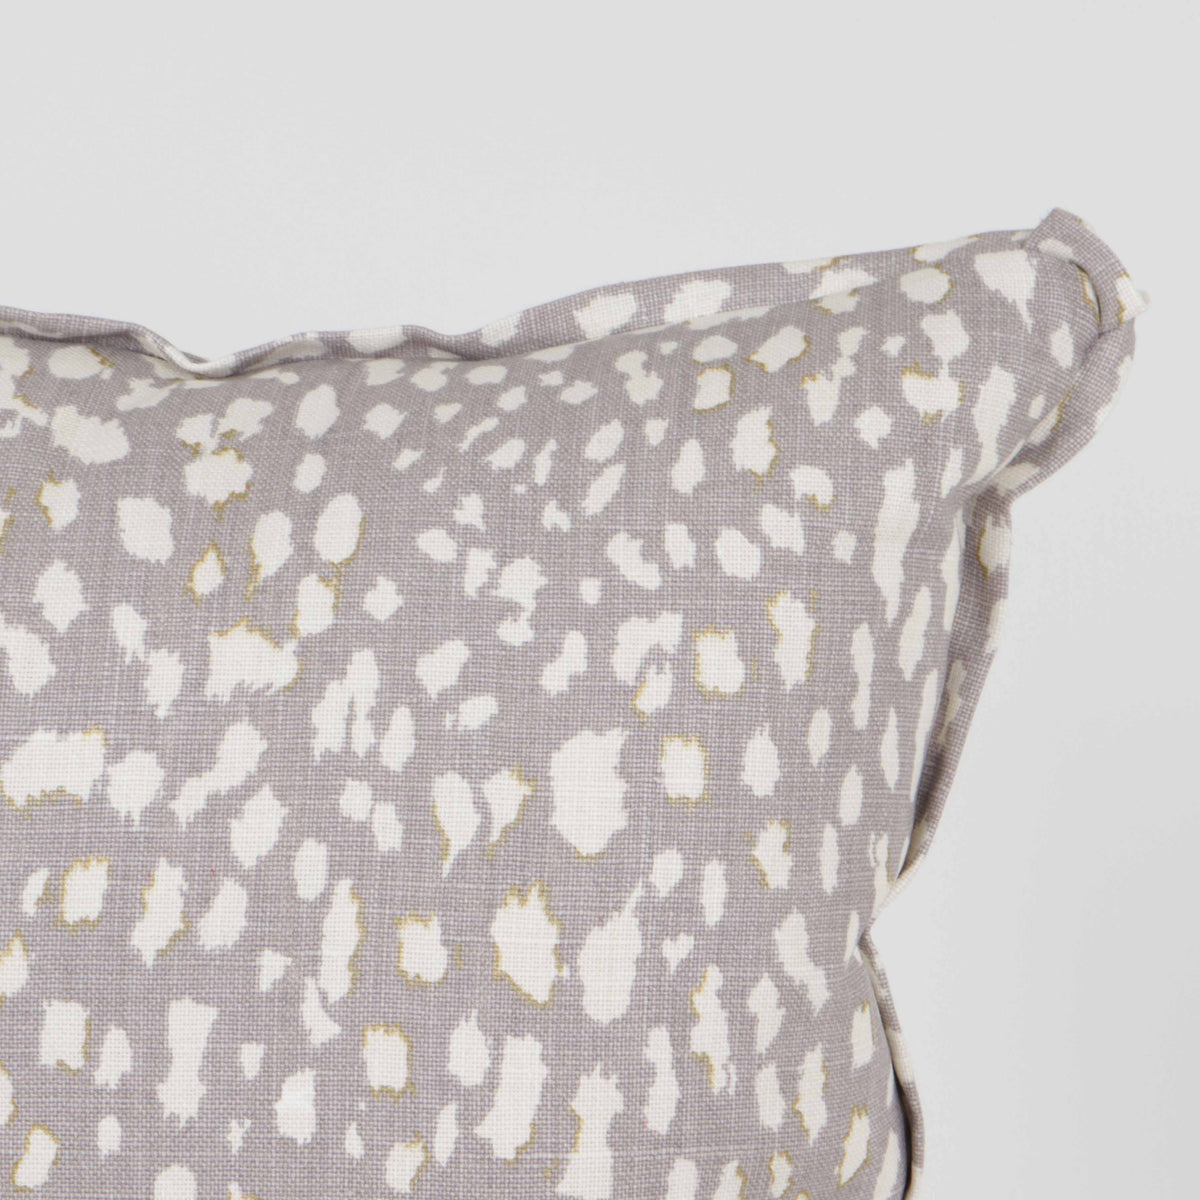 Pair of Jan Showers for Kravet Lynx Dot pillows in Lavender